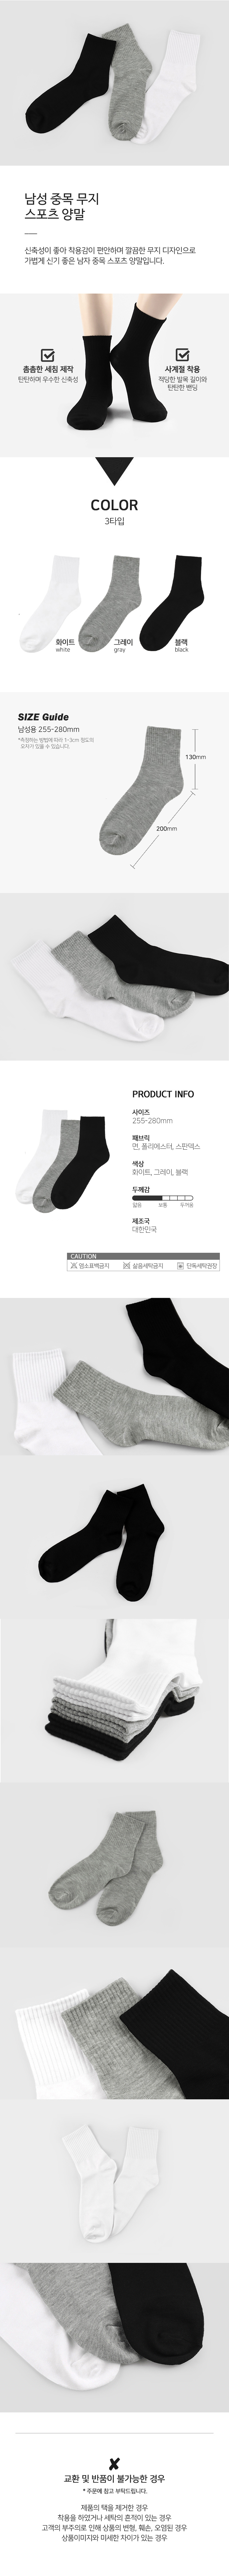 socks_00105.jpg